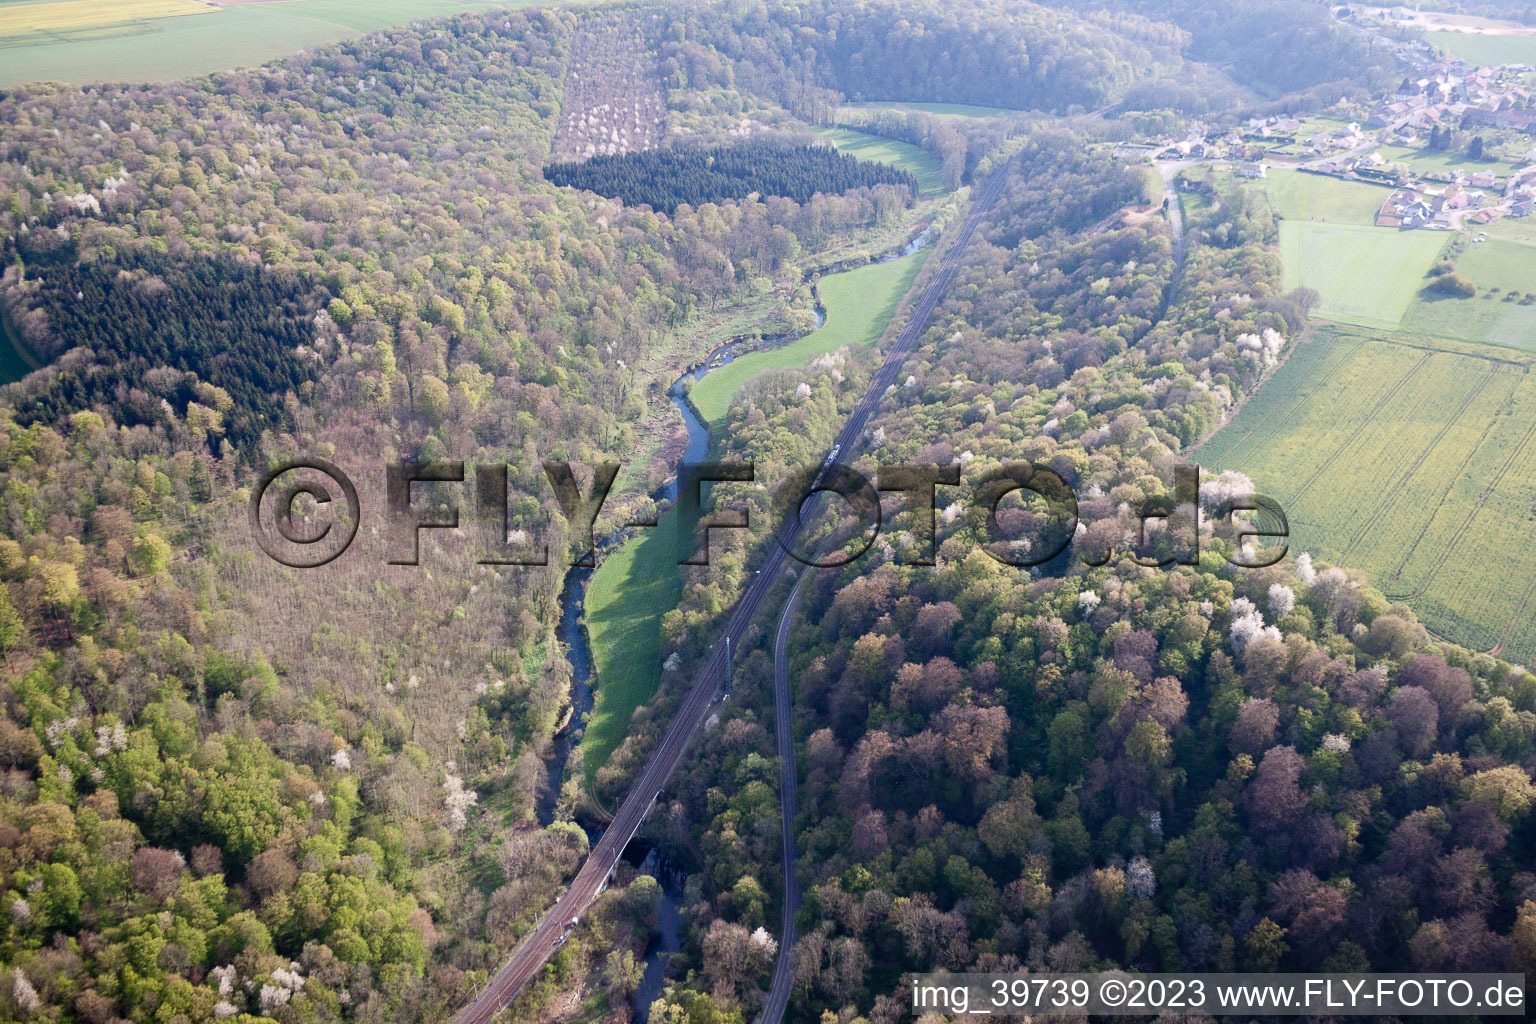 Vue aérienne de Cons-la-Grandville dans le département Meurthe et Moselle, France